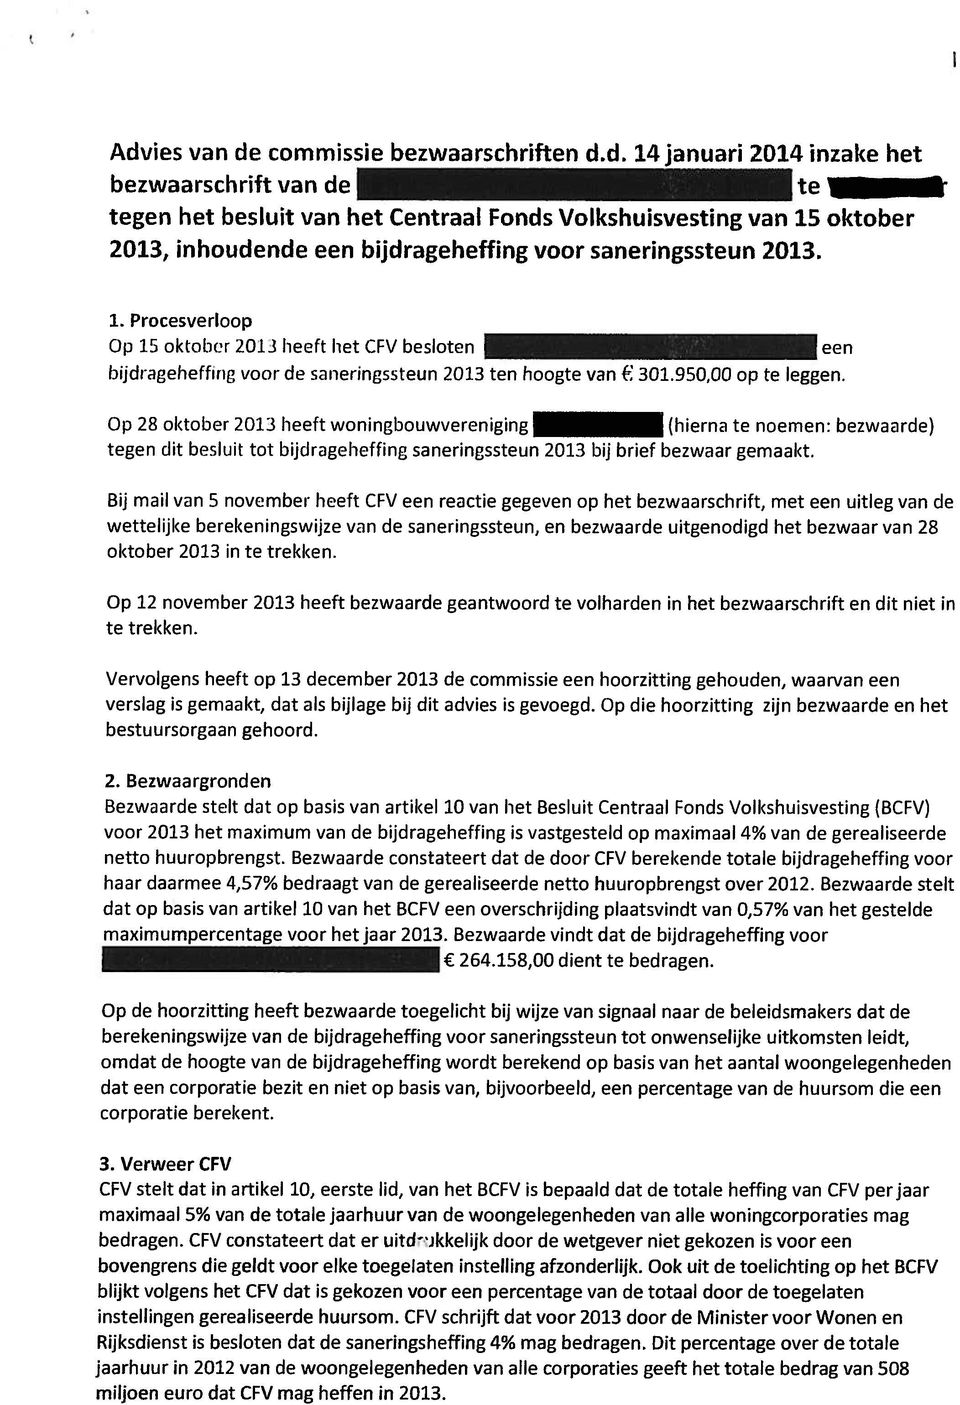 Op 28 oktober 2013 heeft woningbouwvei-eniging (hierna te noemen: bezwaarde) tegen dit besluit tot bijdrageheffing saneringssteun 2013 bij brief bezwaar gemaakt.